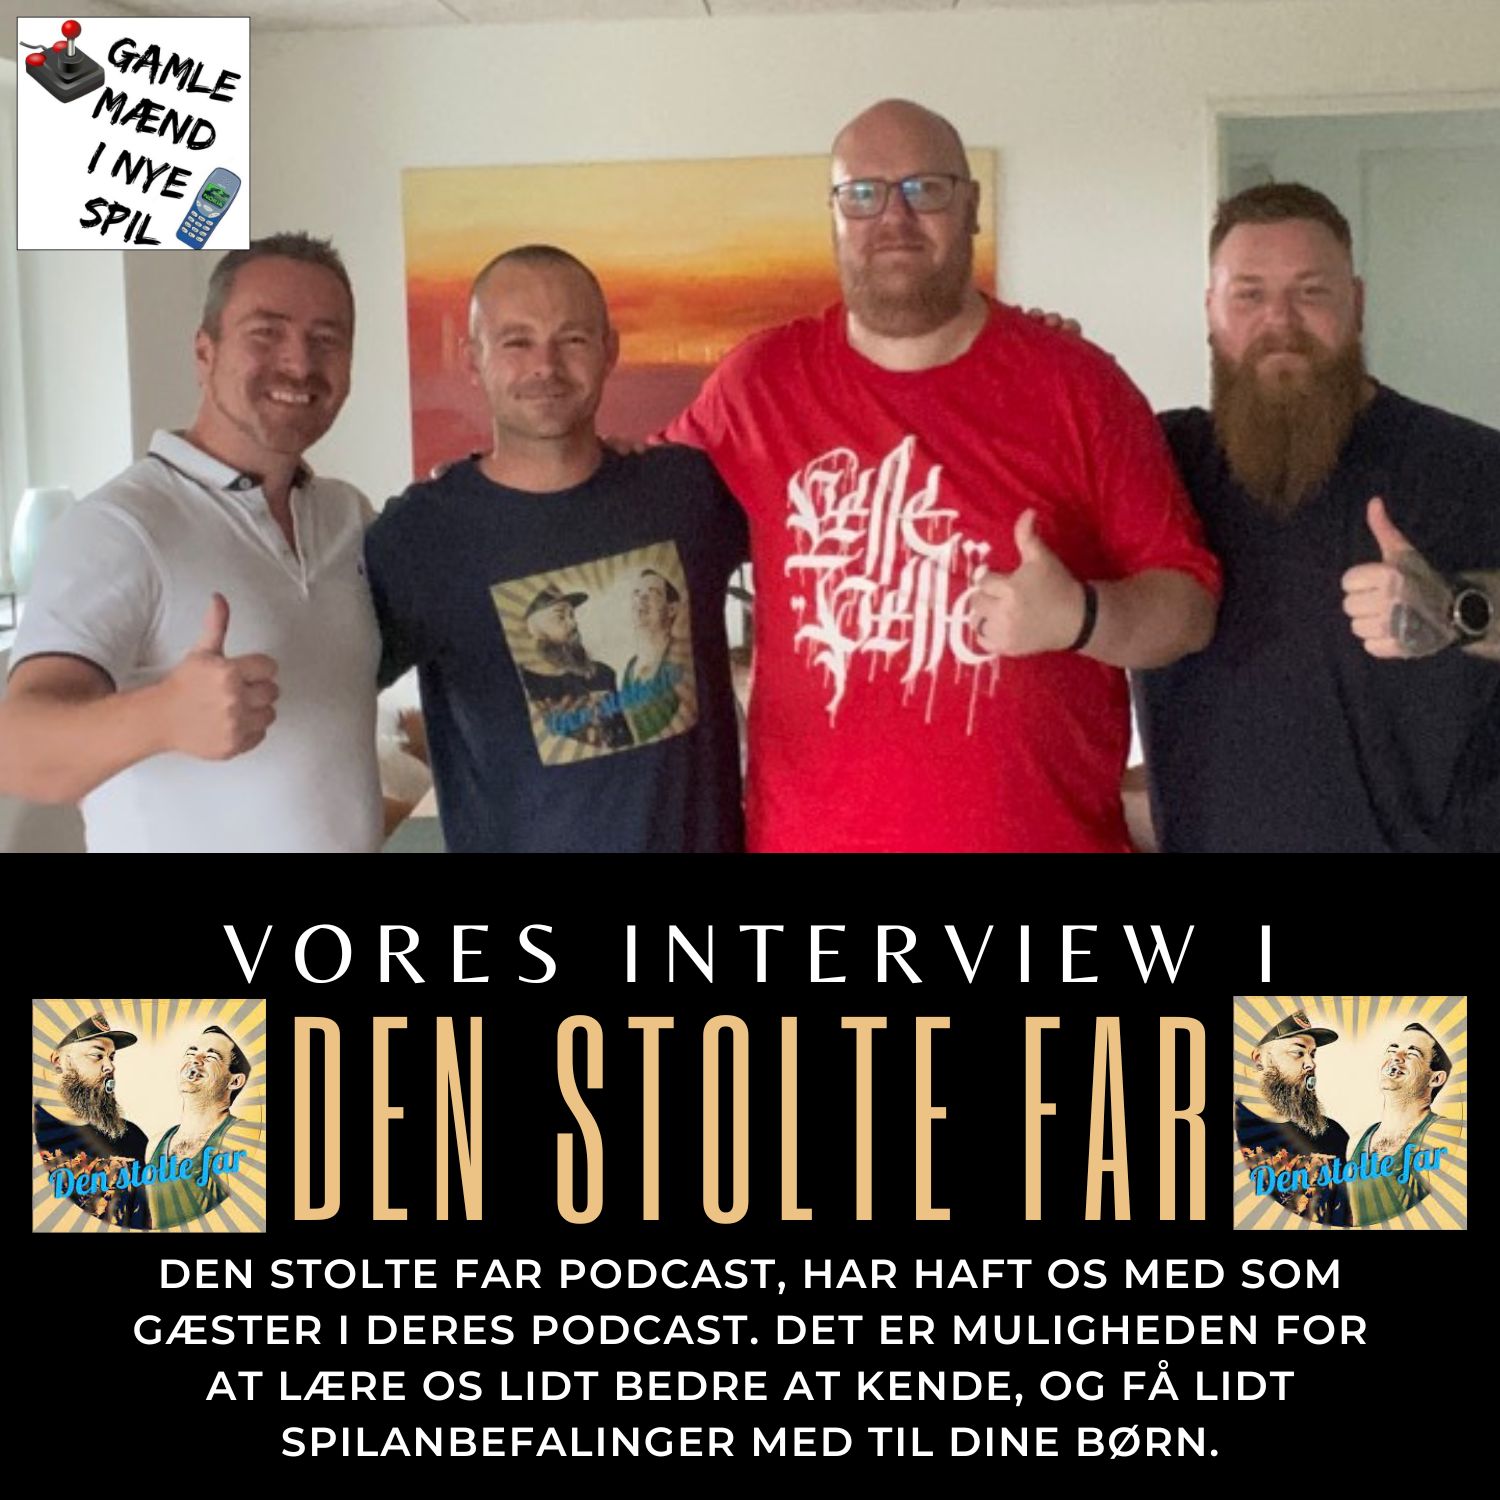 Vi er på besøg hos Den Stolte Far Podcast